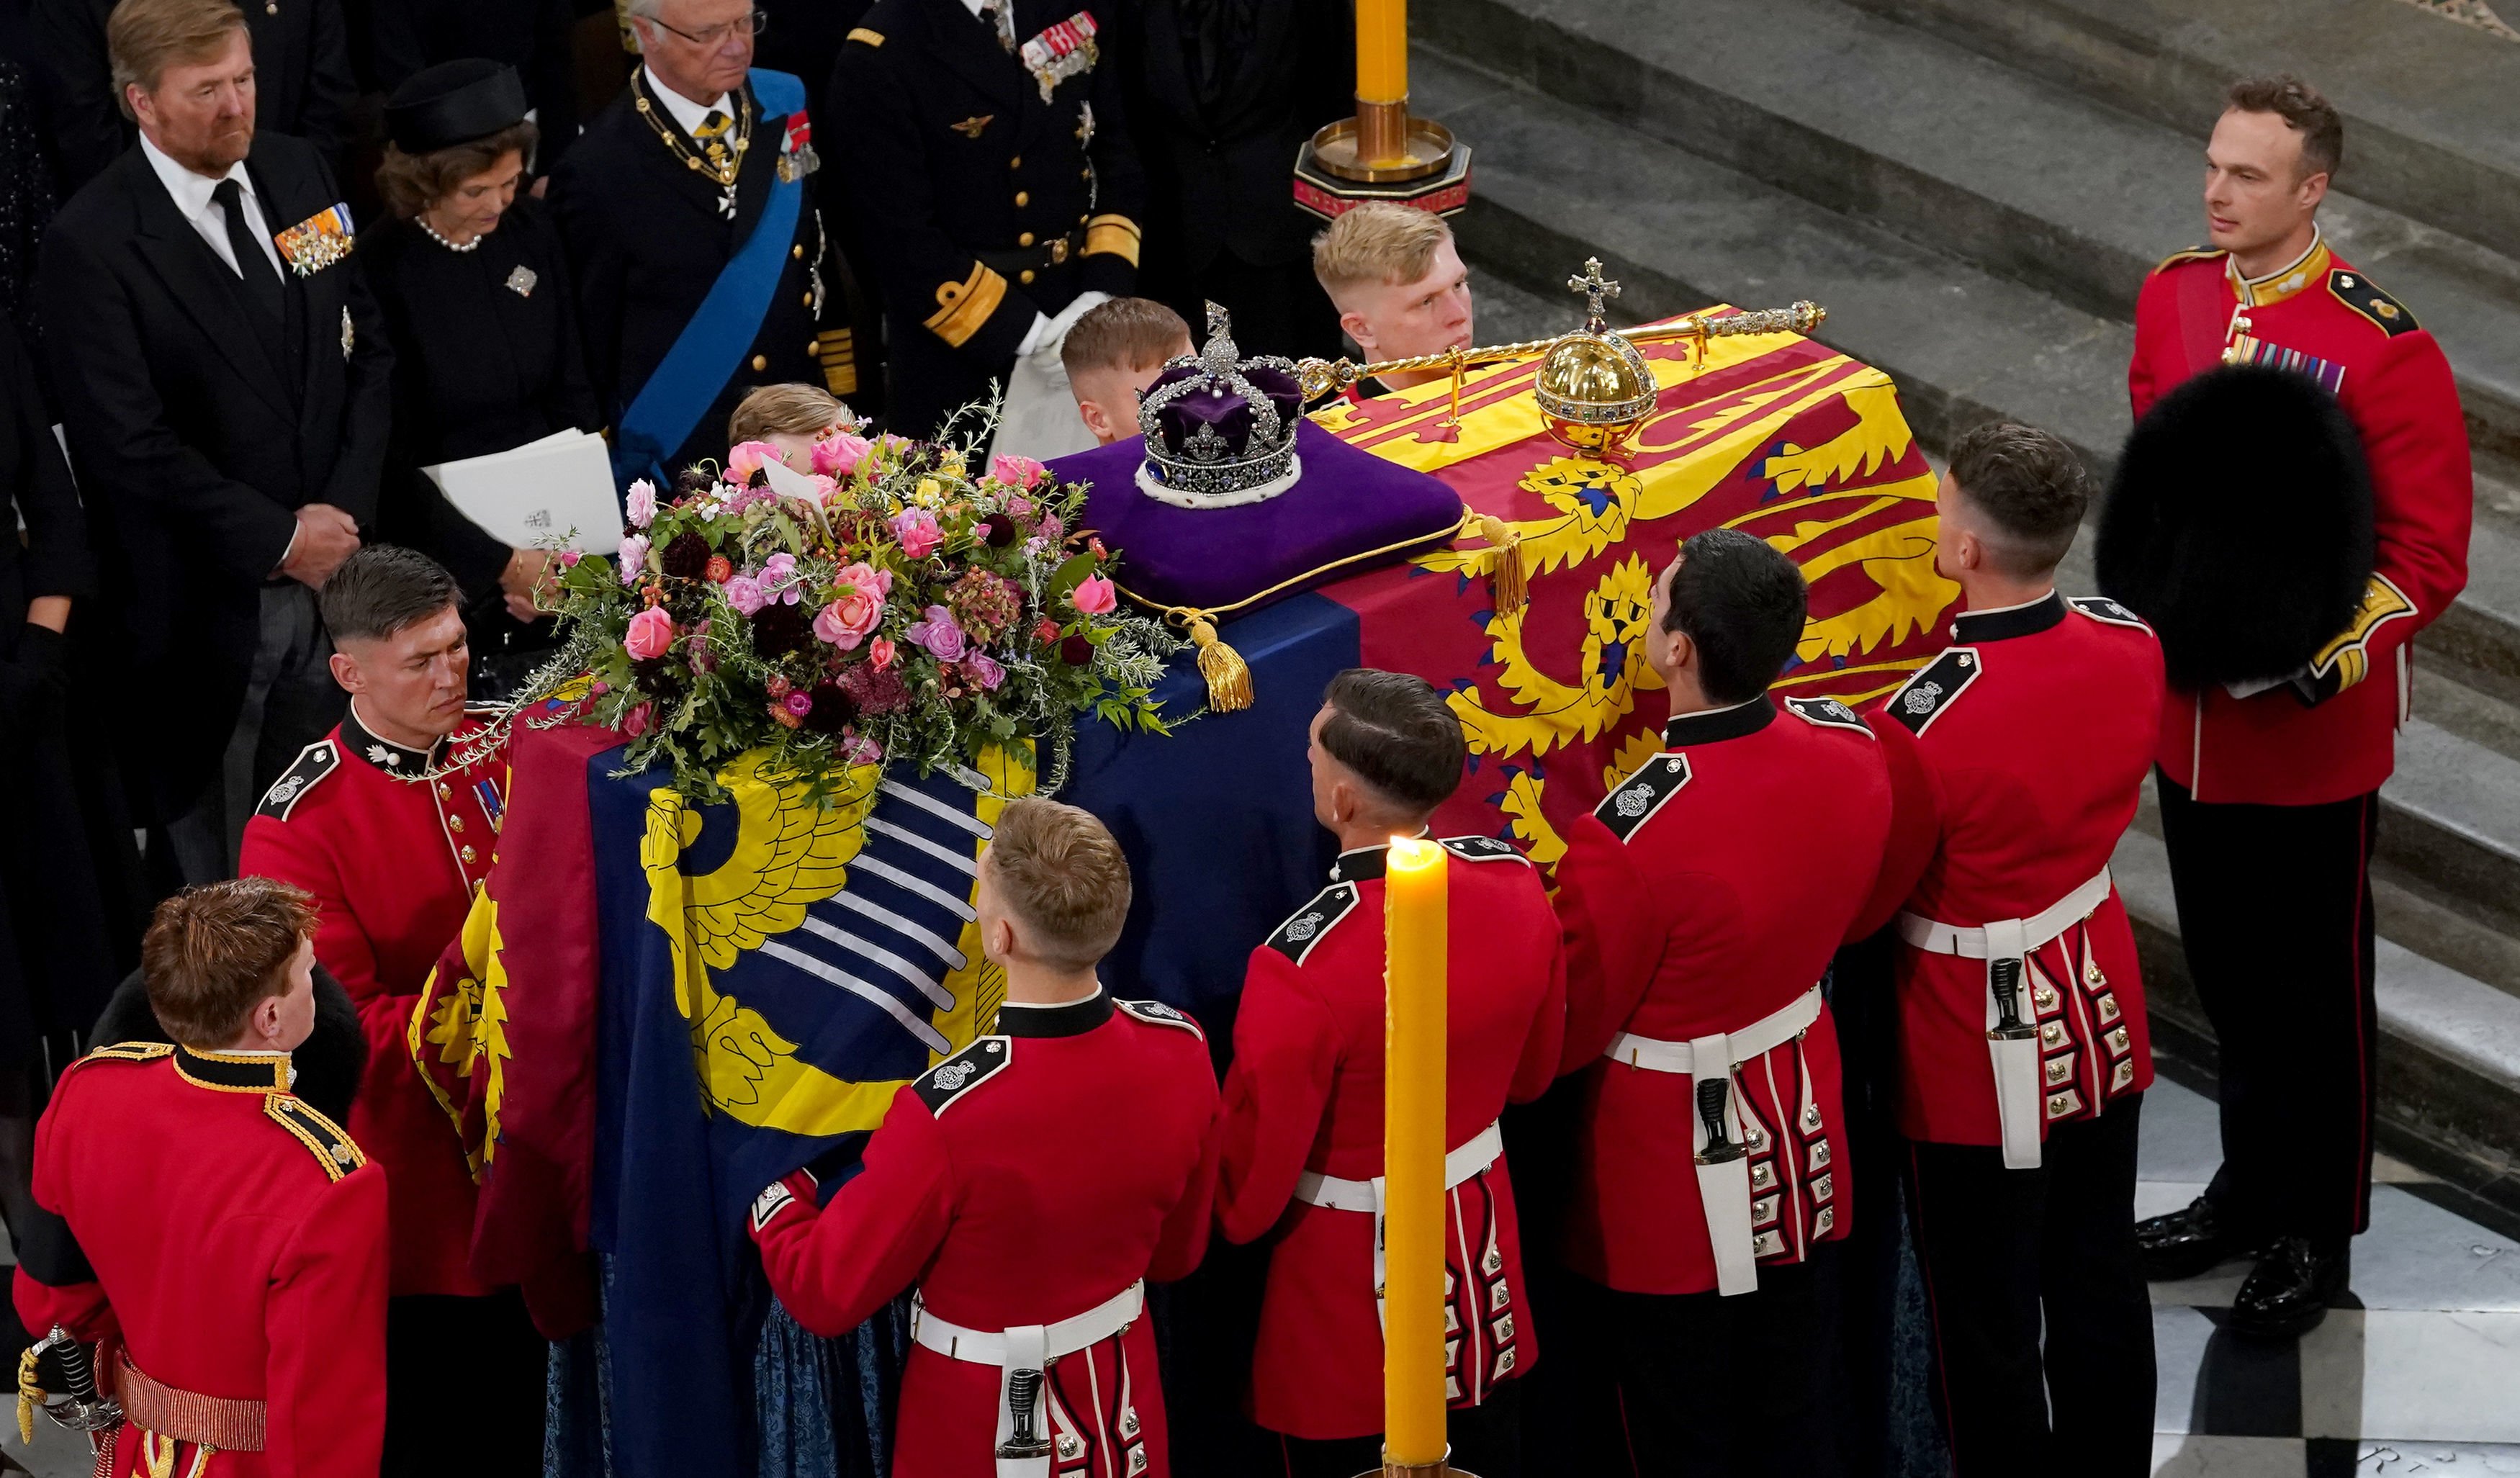 La procesión con el ataúd de la reina Elizabeth II desde la Abadía de Westminster el 19 de septiembre de 2022 en Londres, Inglaterra. | Foto: Getty Images